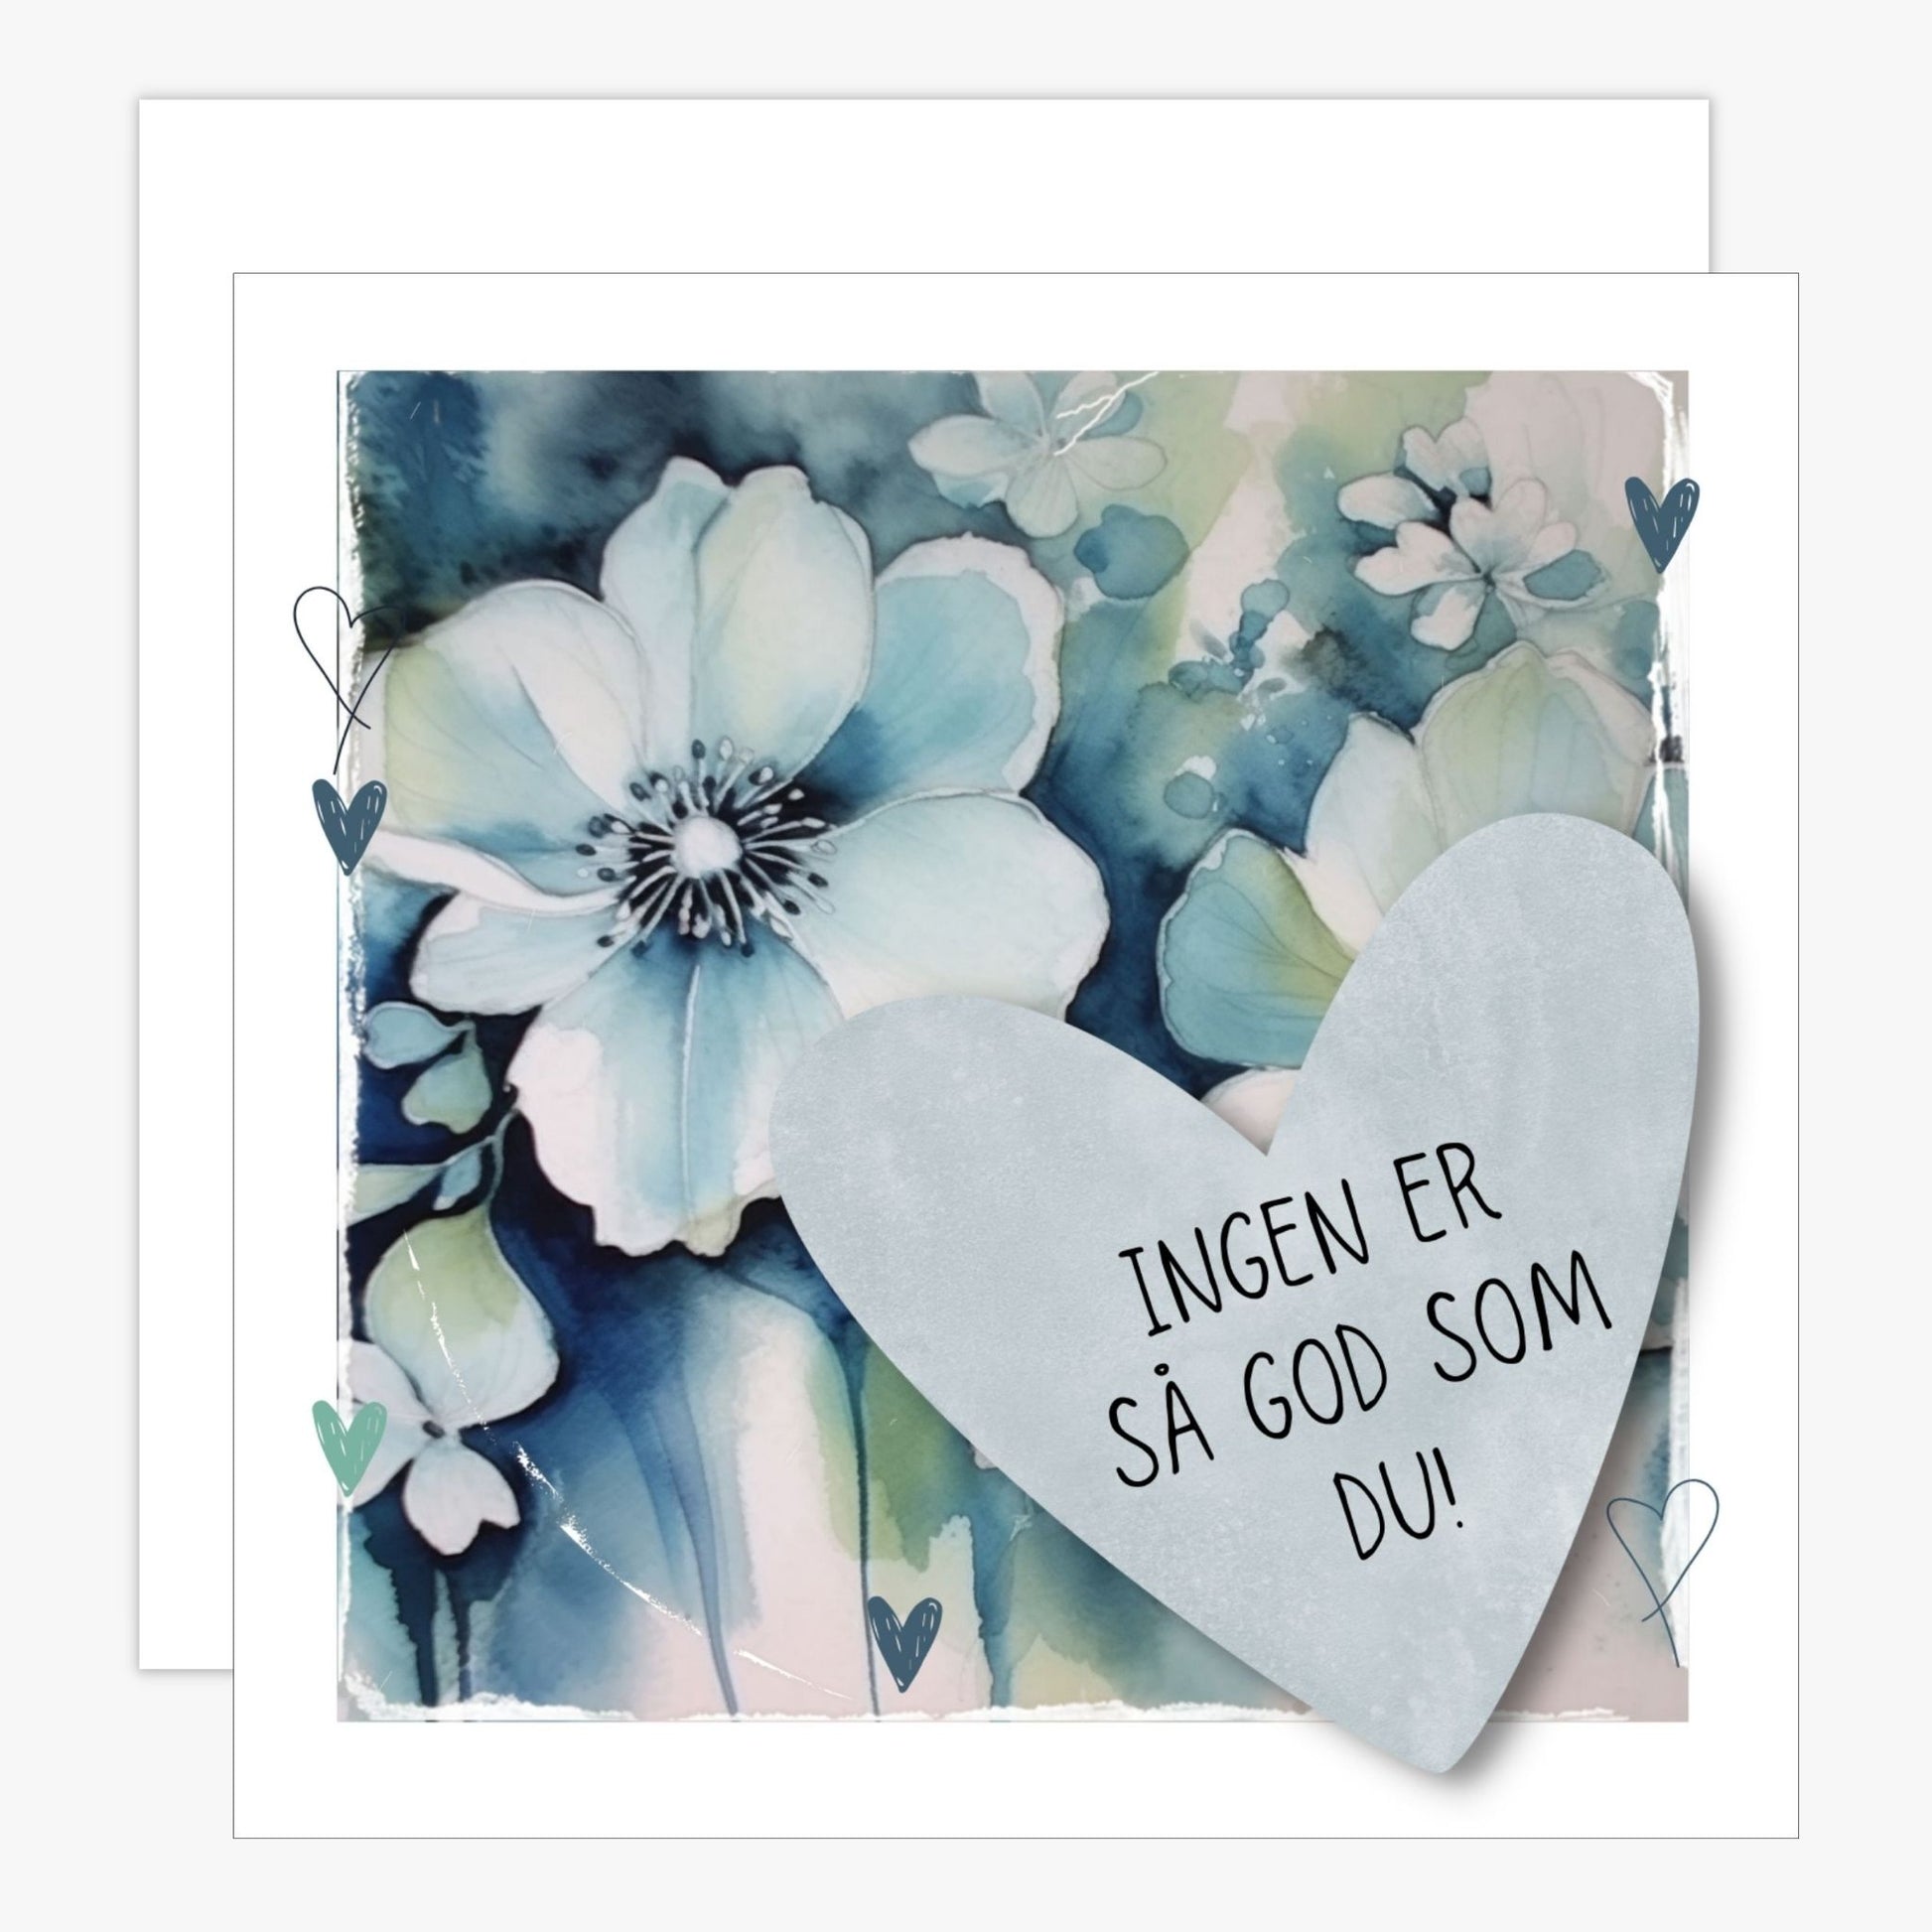 Grafisk kort med et lyseblått hjerte påført tekst "Ingen er så god som du!". Bakgrunn med blomster i blåtoner. Konvolutt er inkludert.